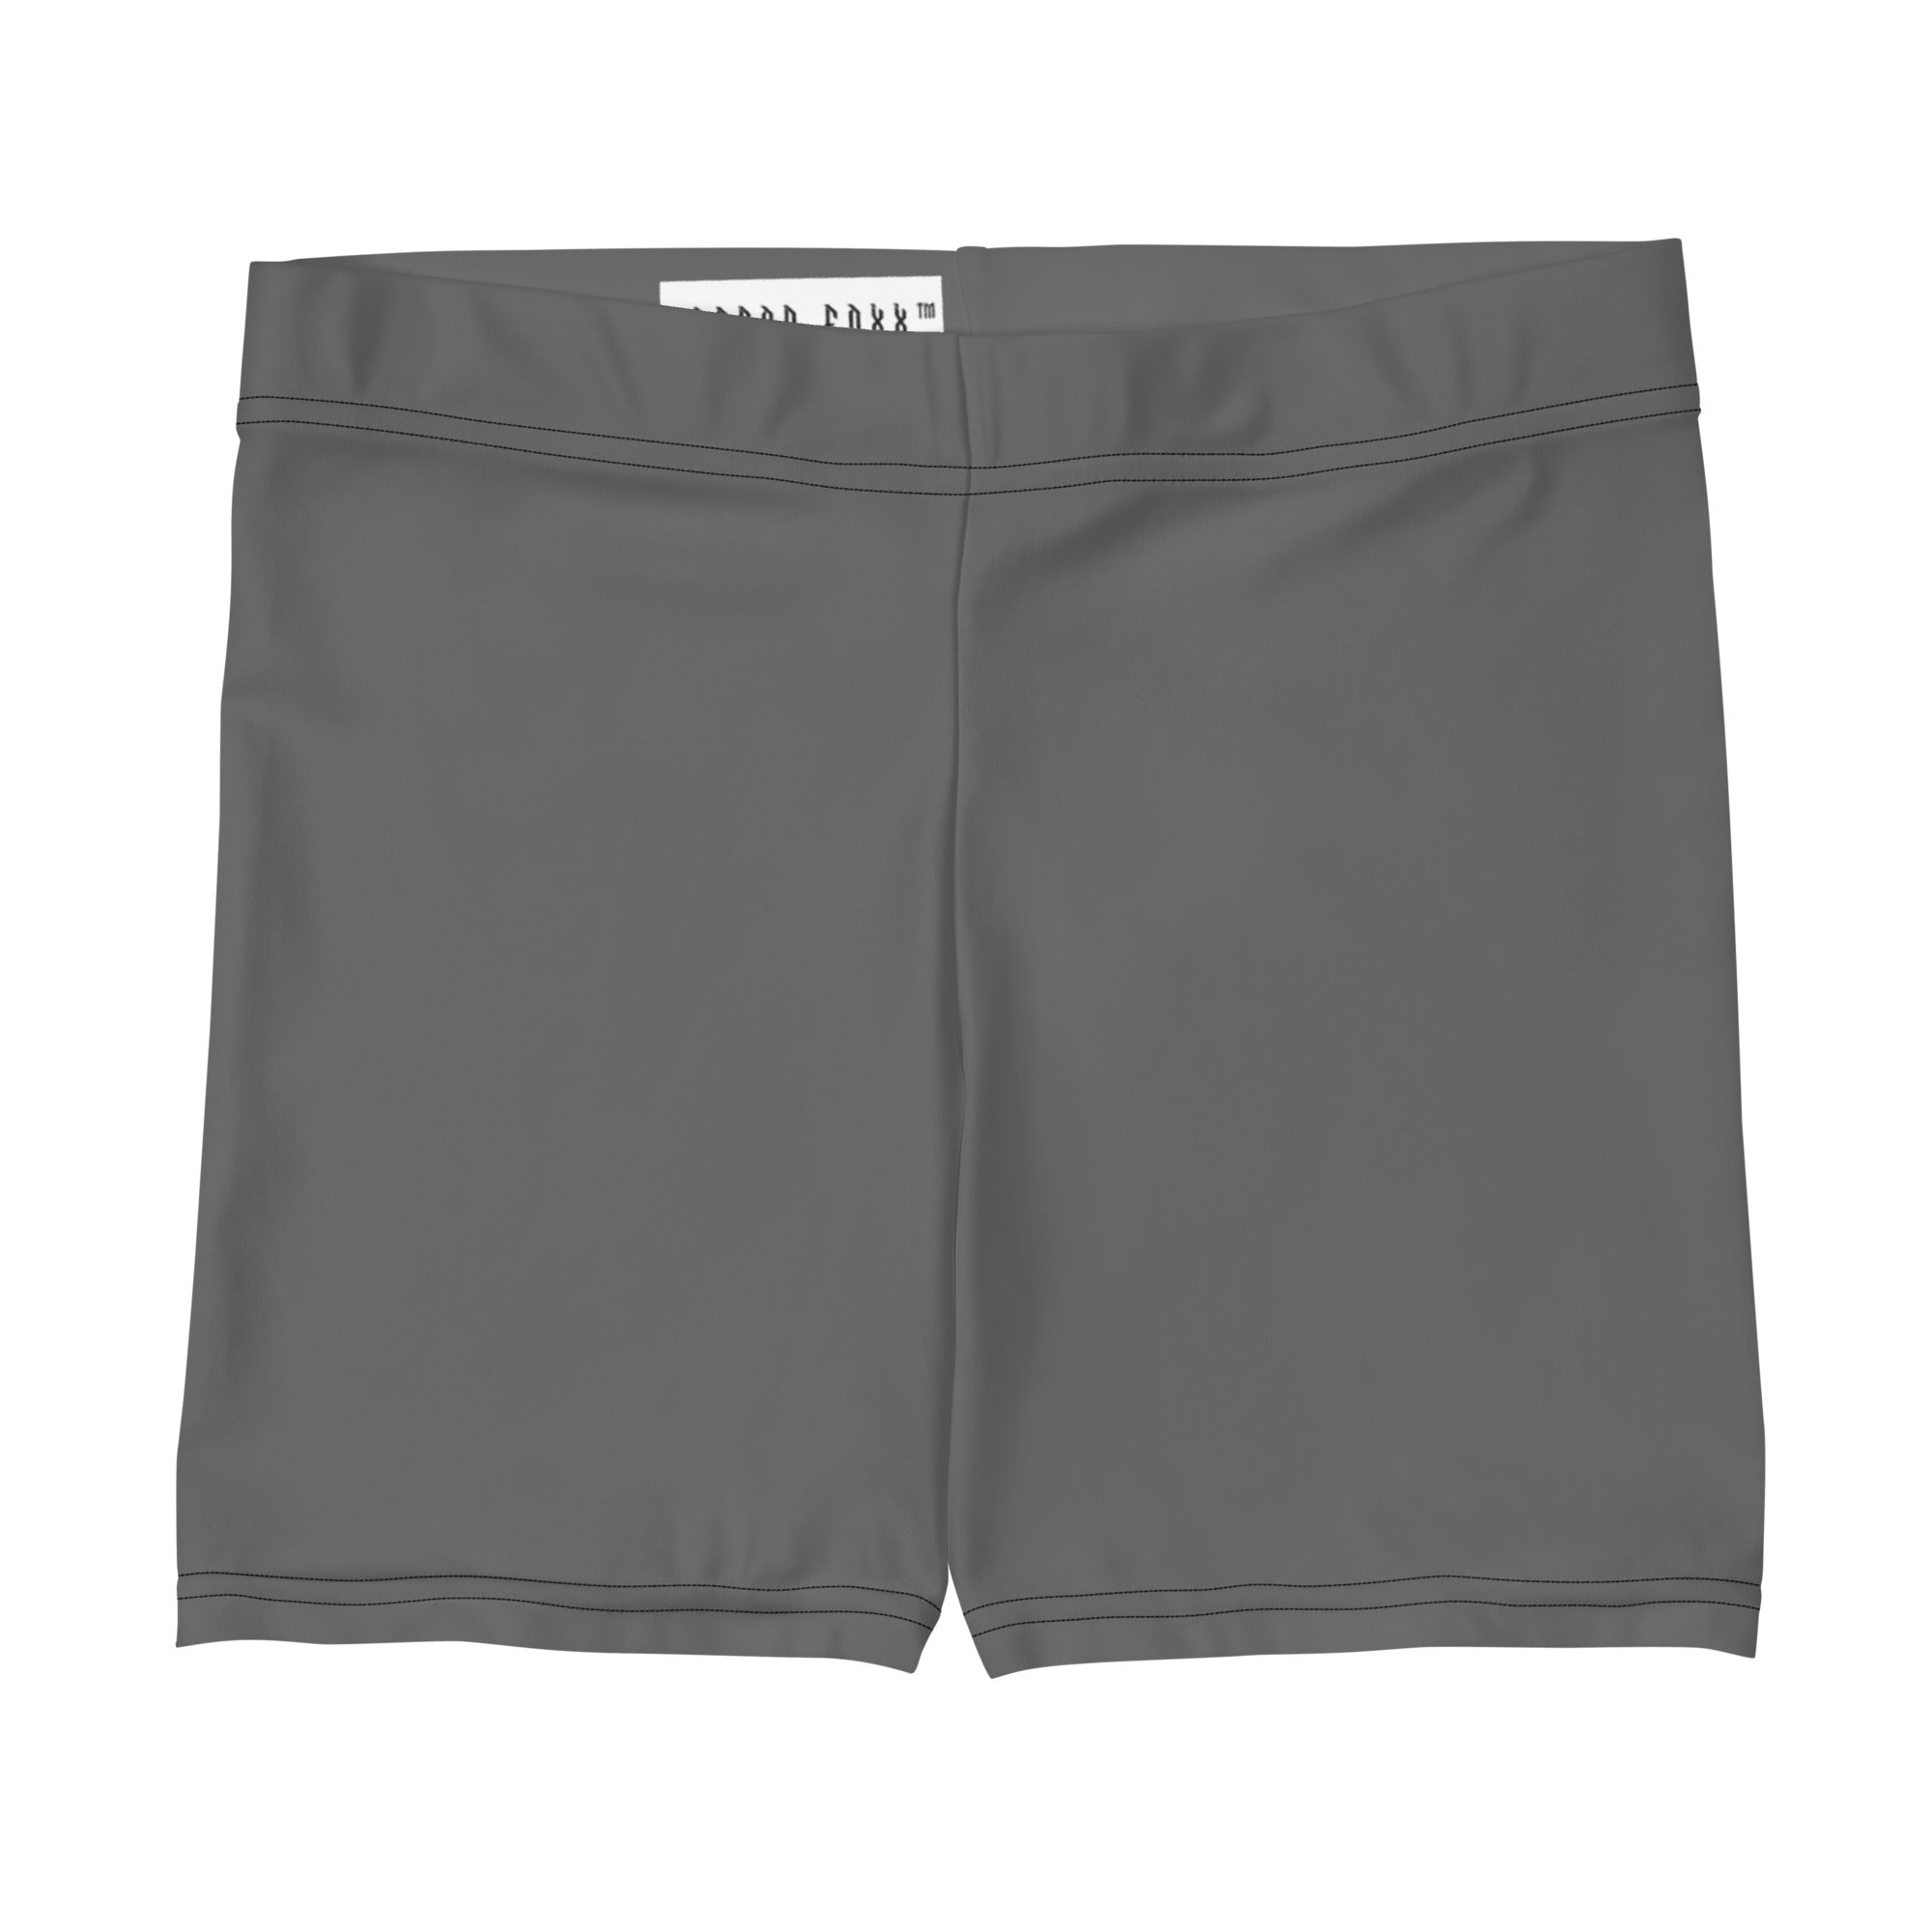 Grey Gym Shorts - Women's Gym Shorts - DRAGON FOXX™ - Grey Gym Shorts - 2040980_9296 - XS - - Dragon Foxx™ - Dragon Foxx™ Grey Gym Shorts - Dragon Foxx™ Gym Shorts